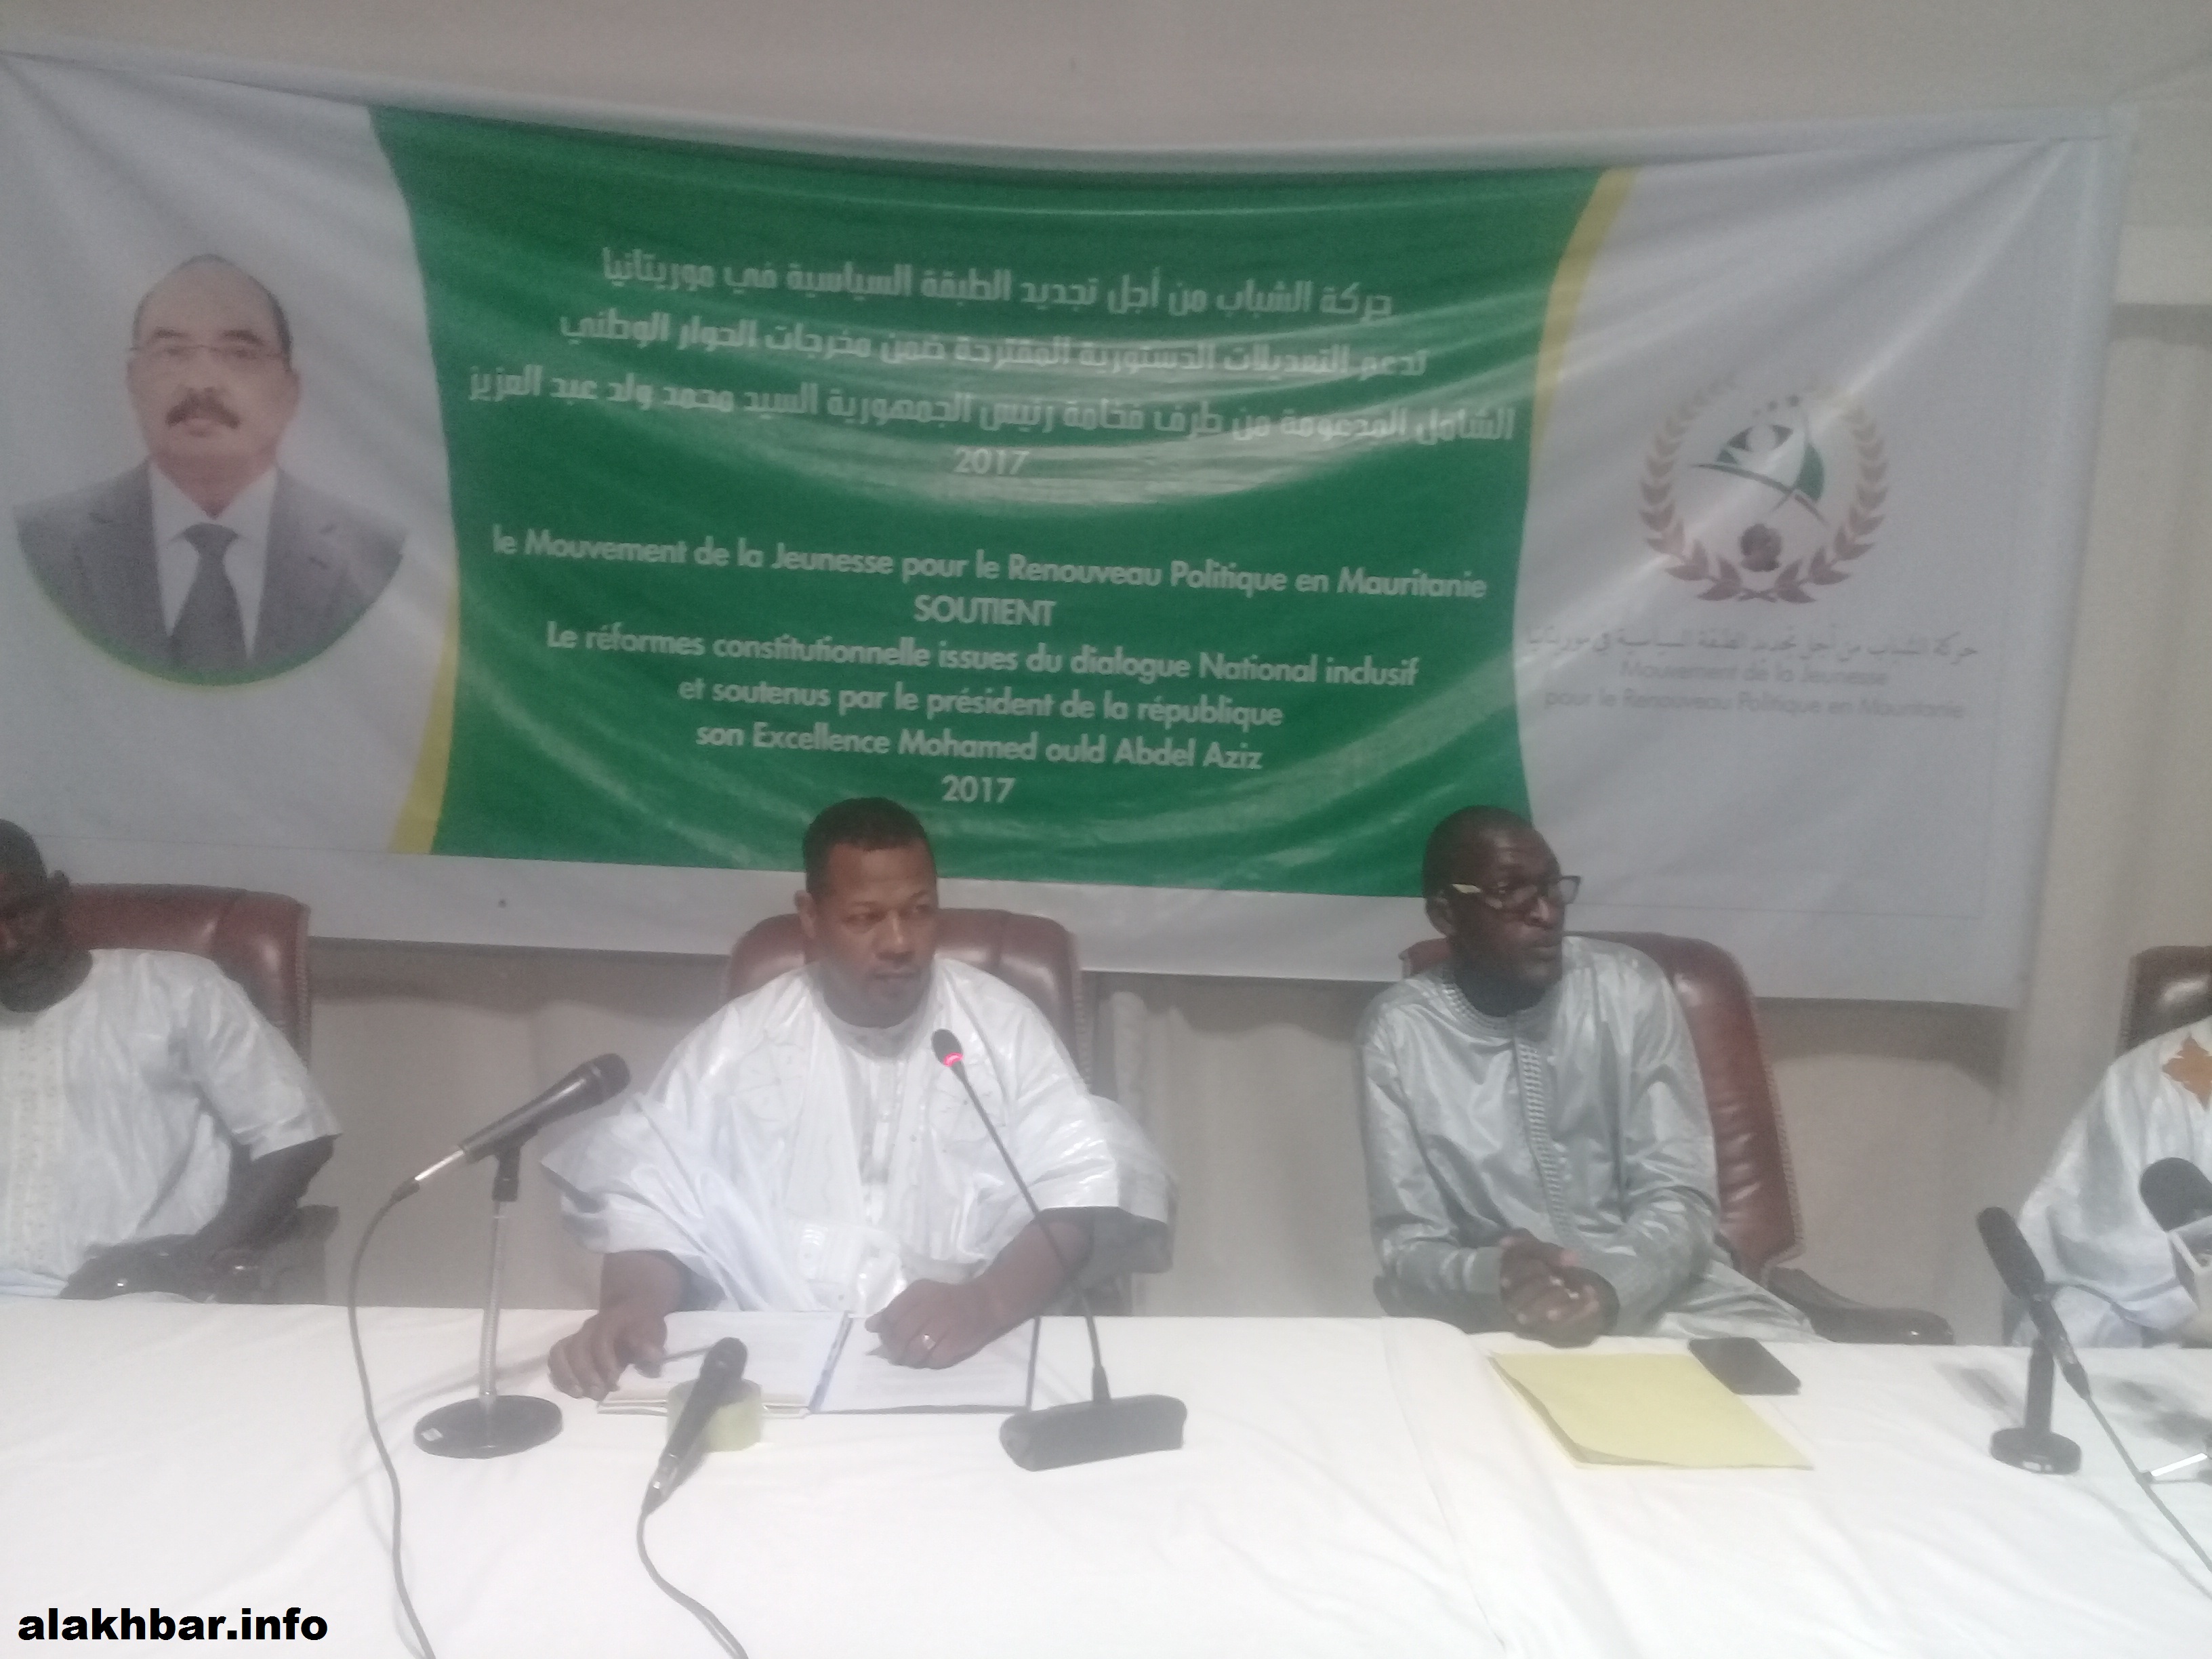 Mauritanie : un mouvement de jeunesse soutient les réformes constitutionnelles